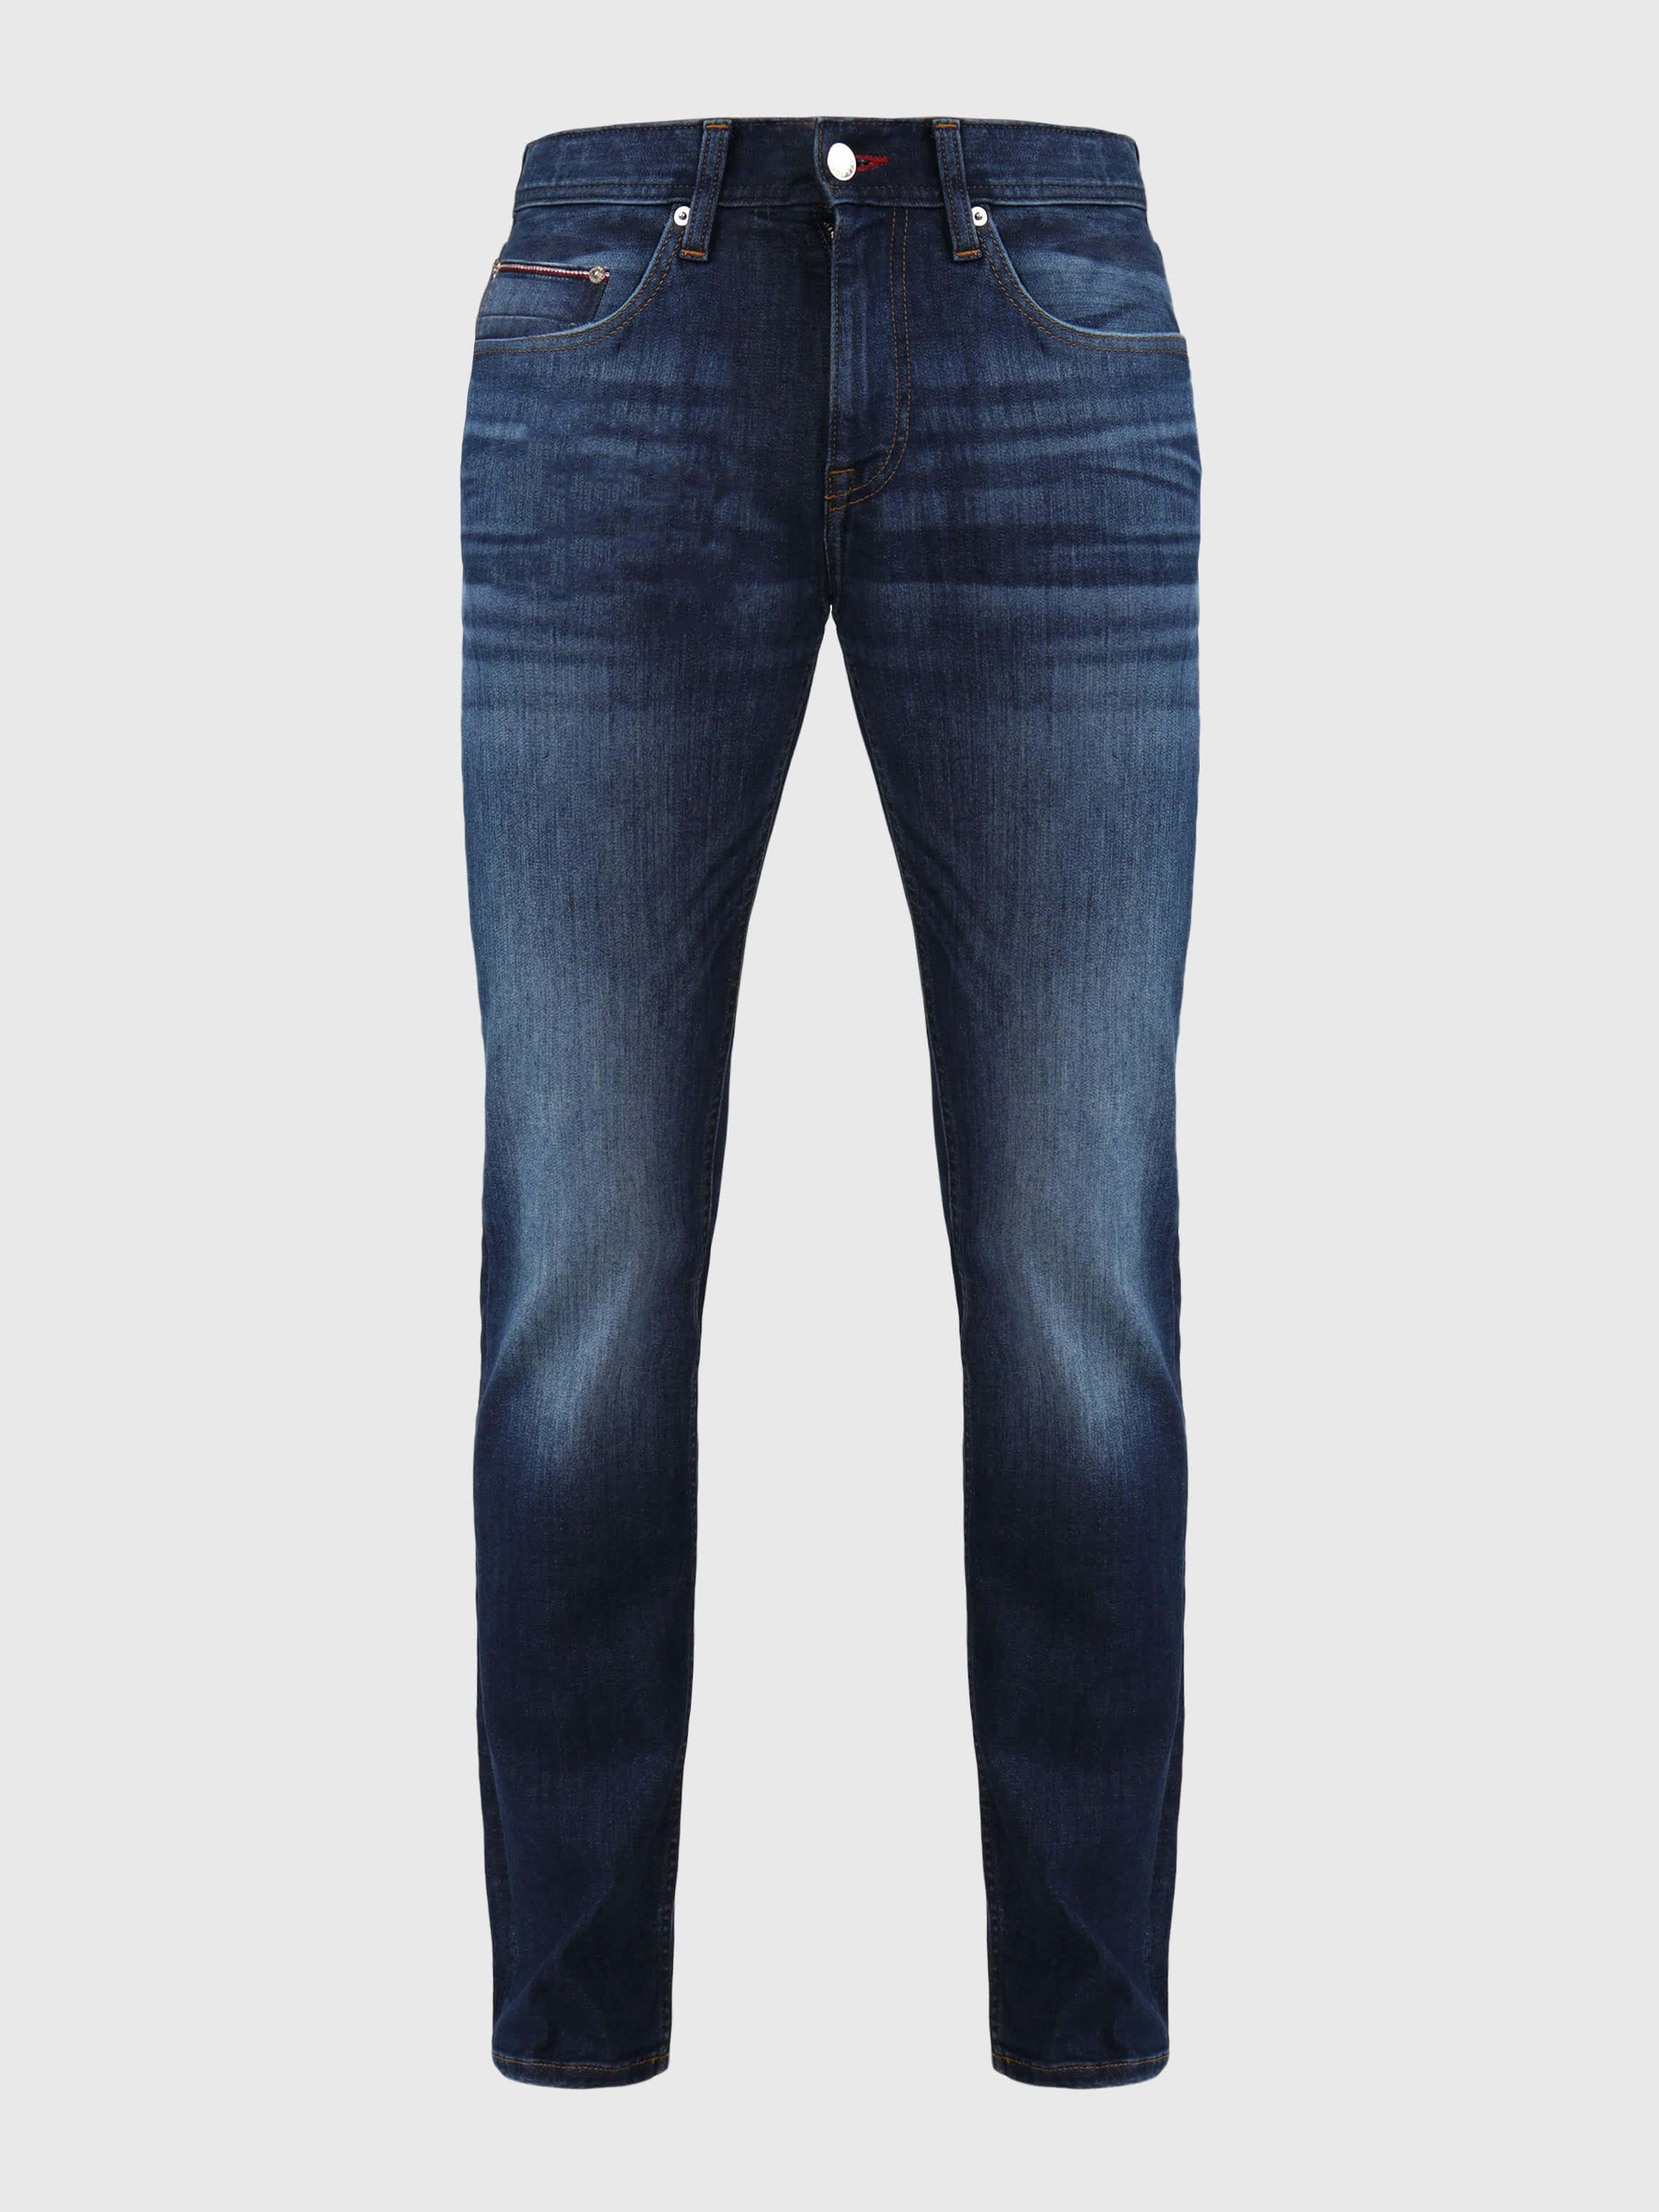 Jeans denton stretch straight fit con franjas deslavadas de hombre